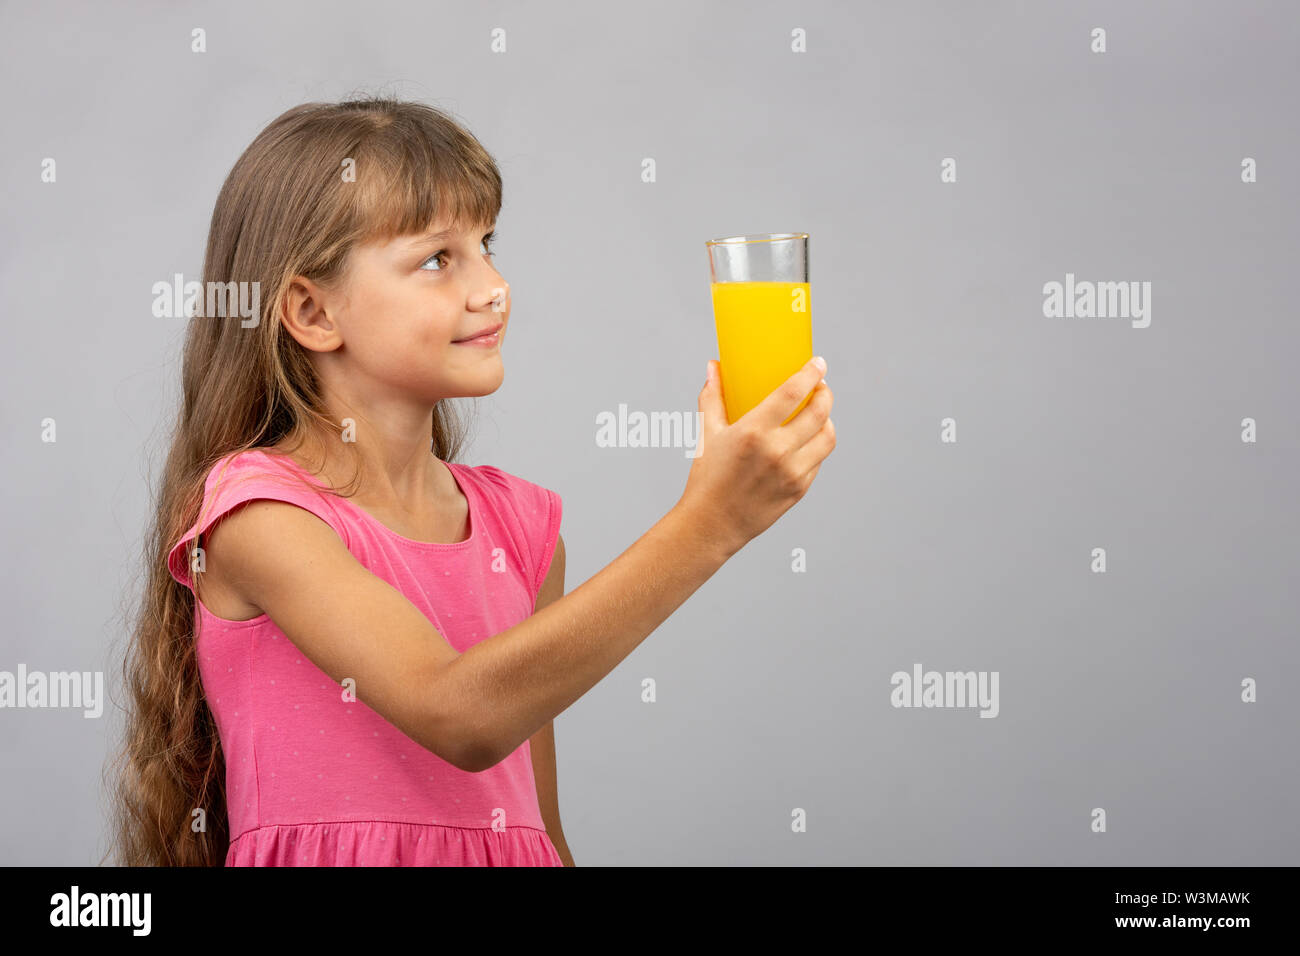 Una ragazza tiene un bicchiere di succo di frutta in mano e guarda lo spazio vuoto sulla destra Foto Stock